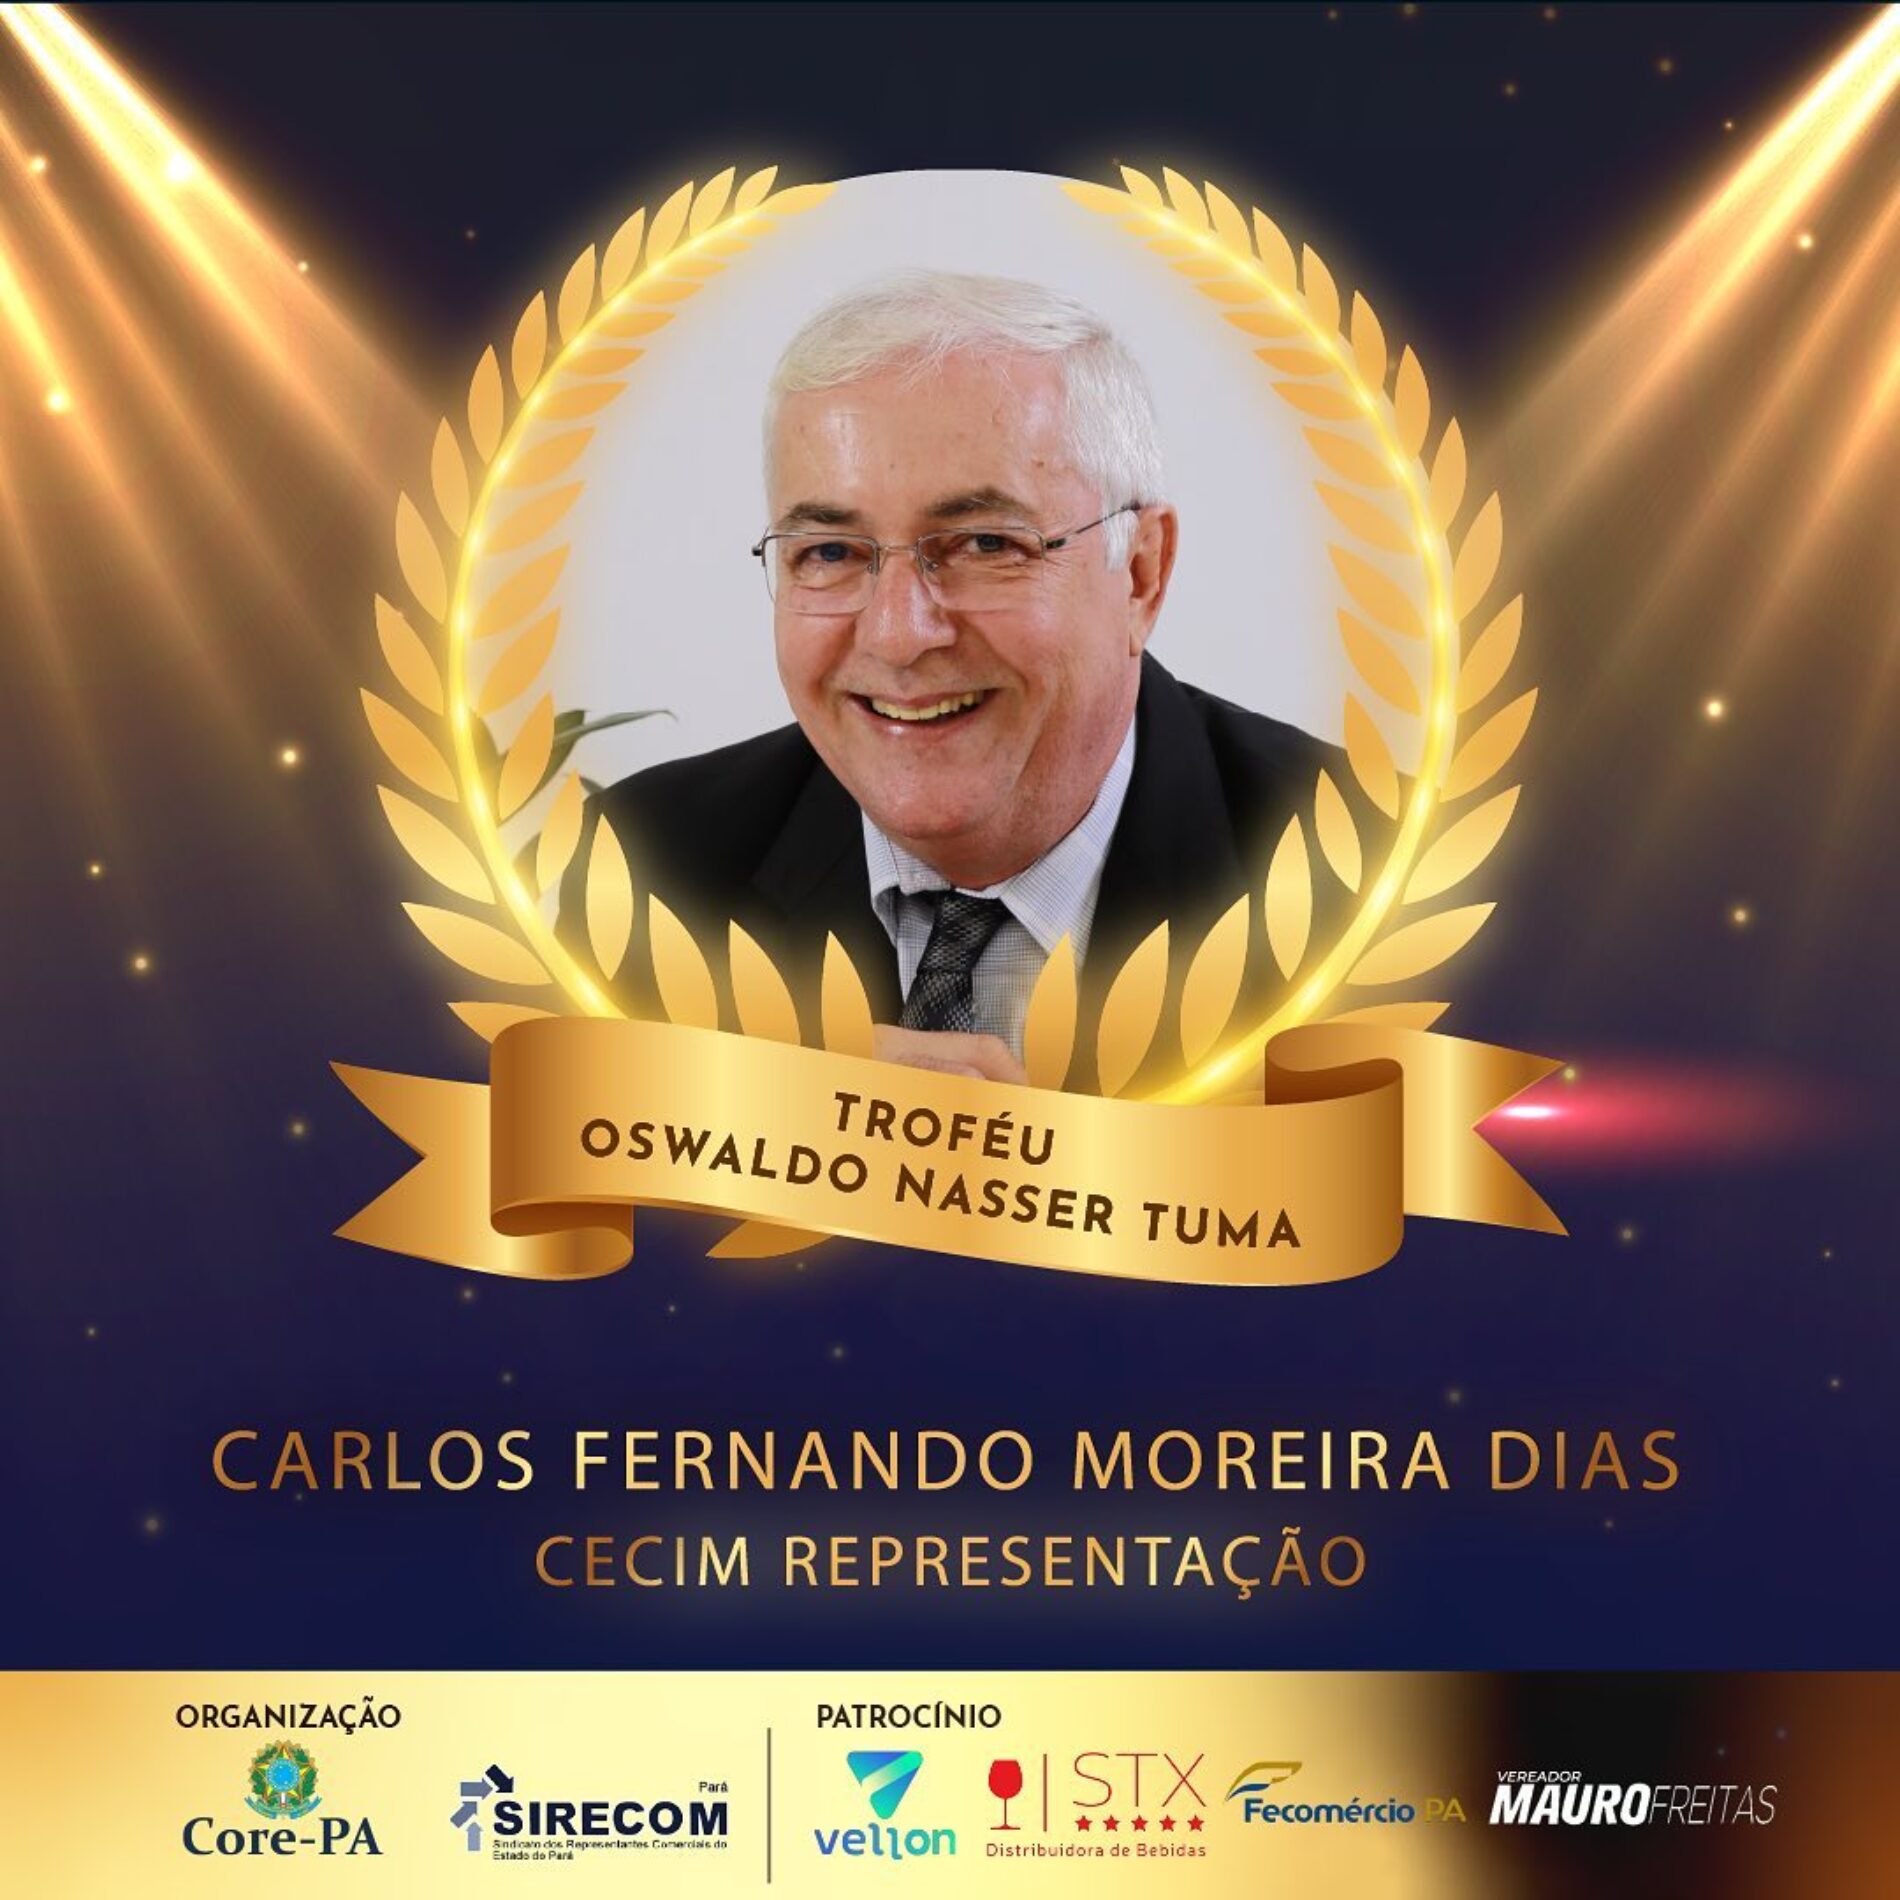 SR. CARLOS FERNANDO MOREIRA DIAS